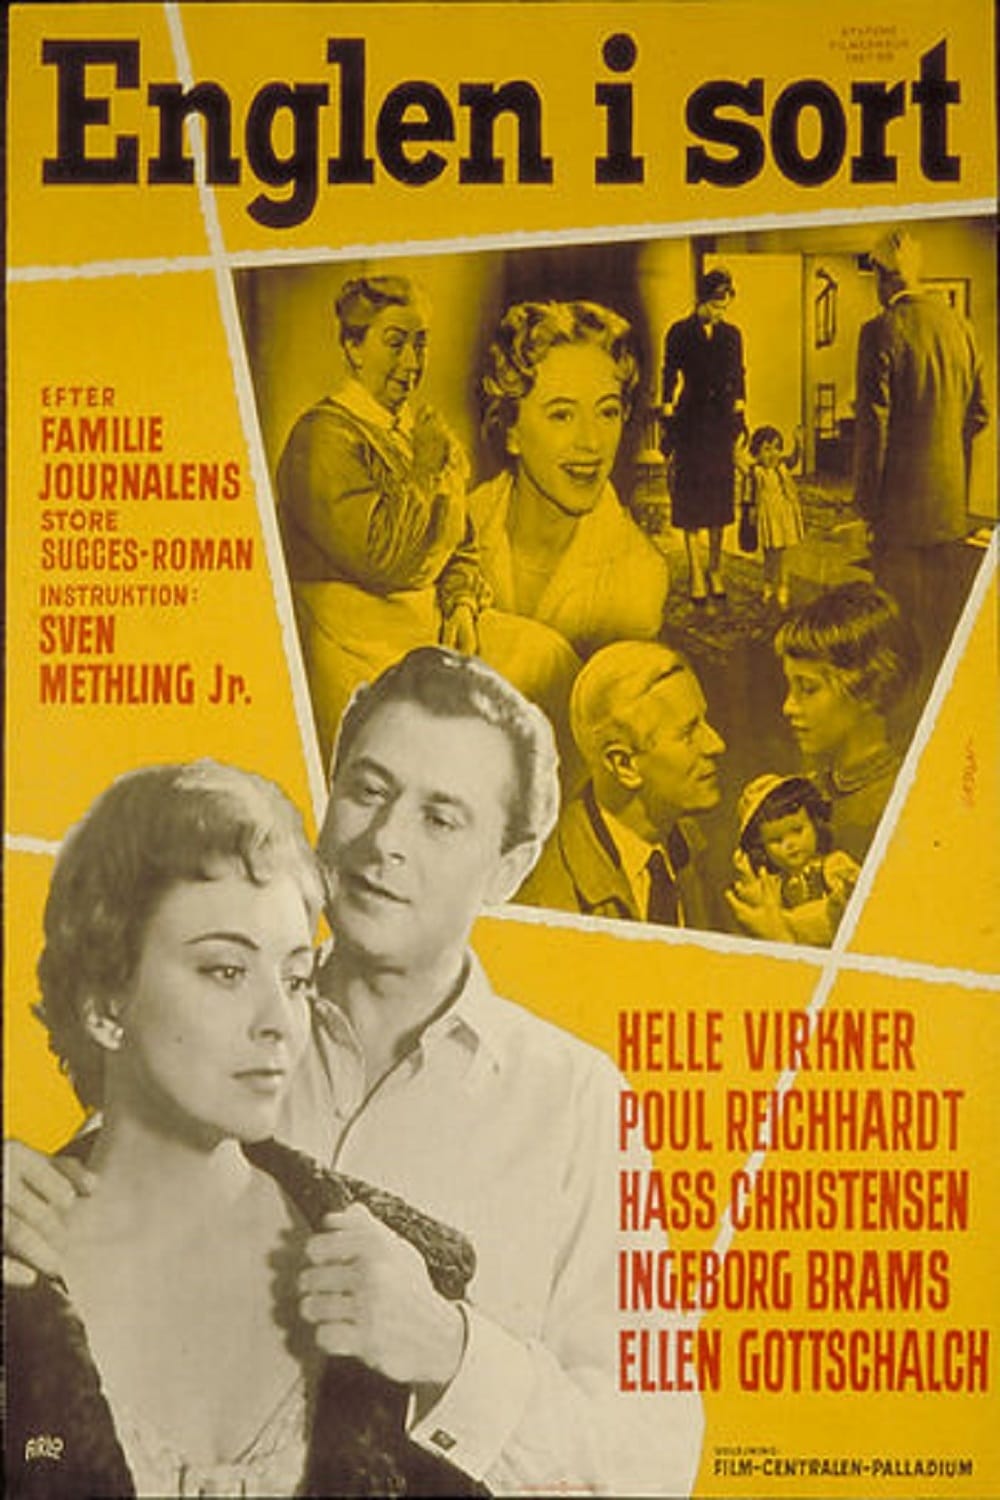 Englen i sort (1957)